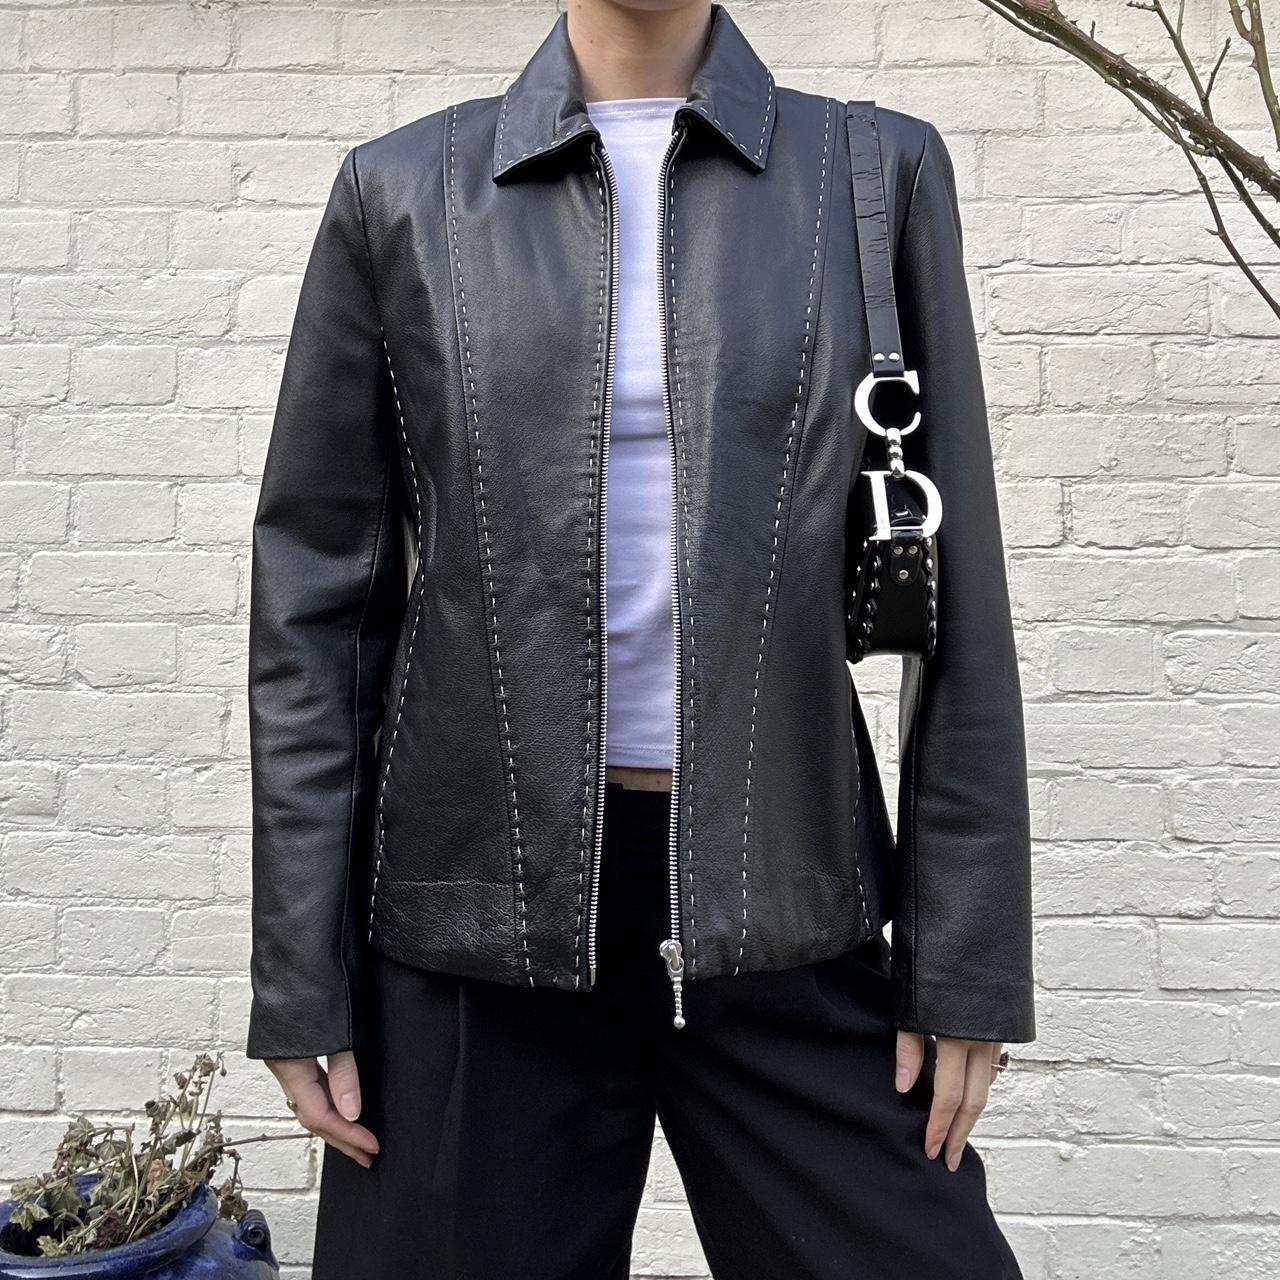 Vintage 90s black leather jacket with contrast... - Depop